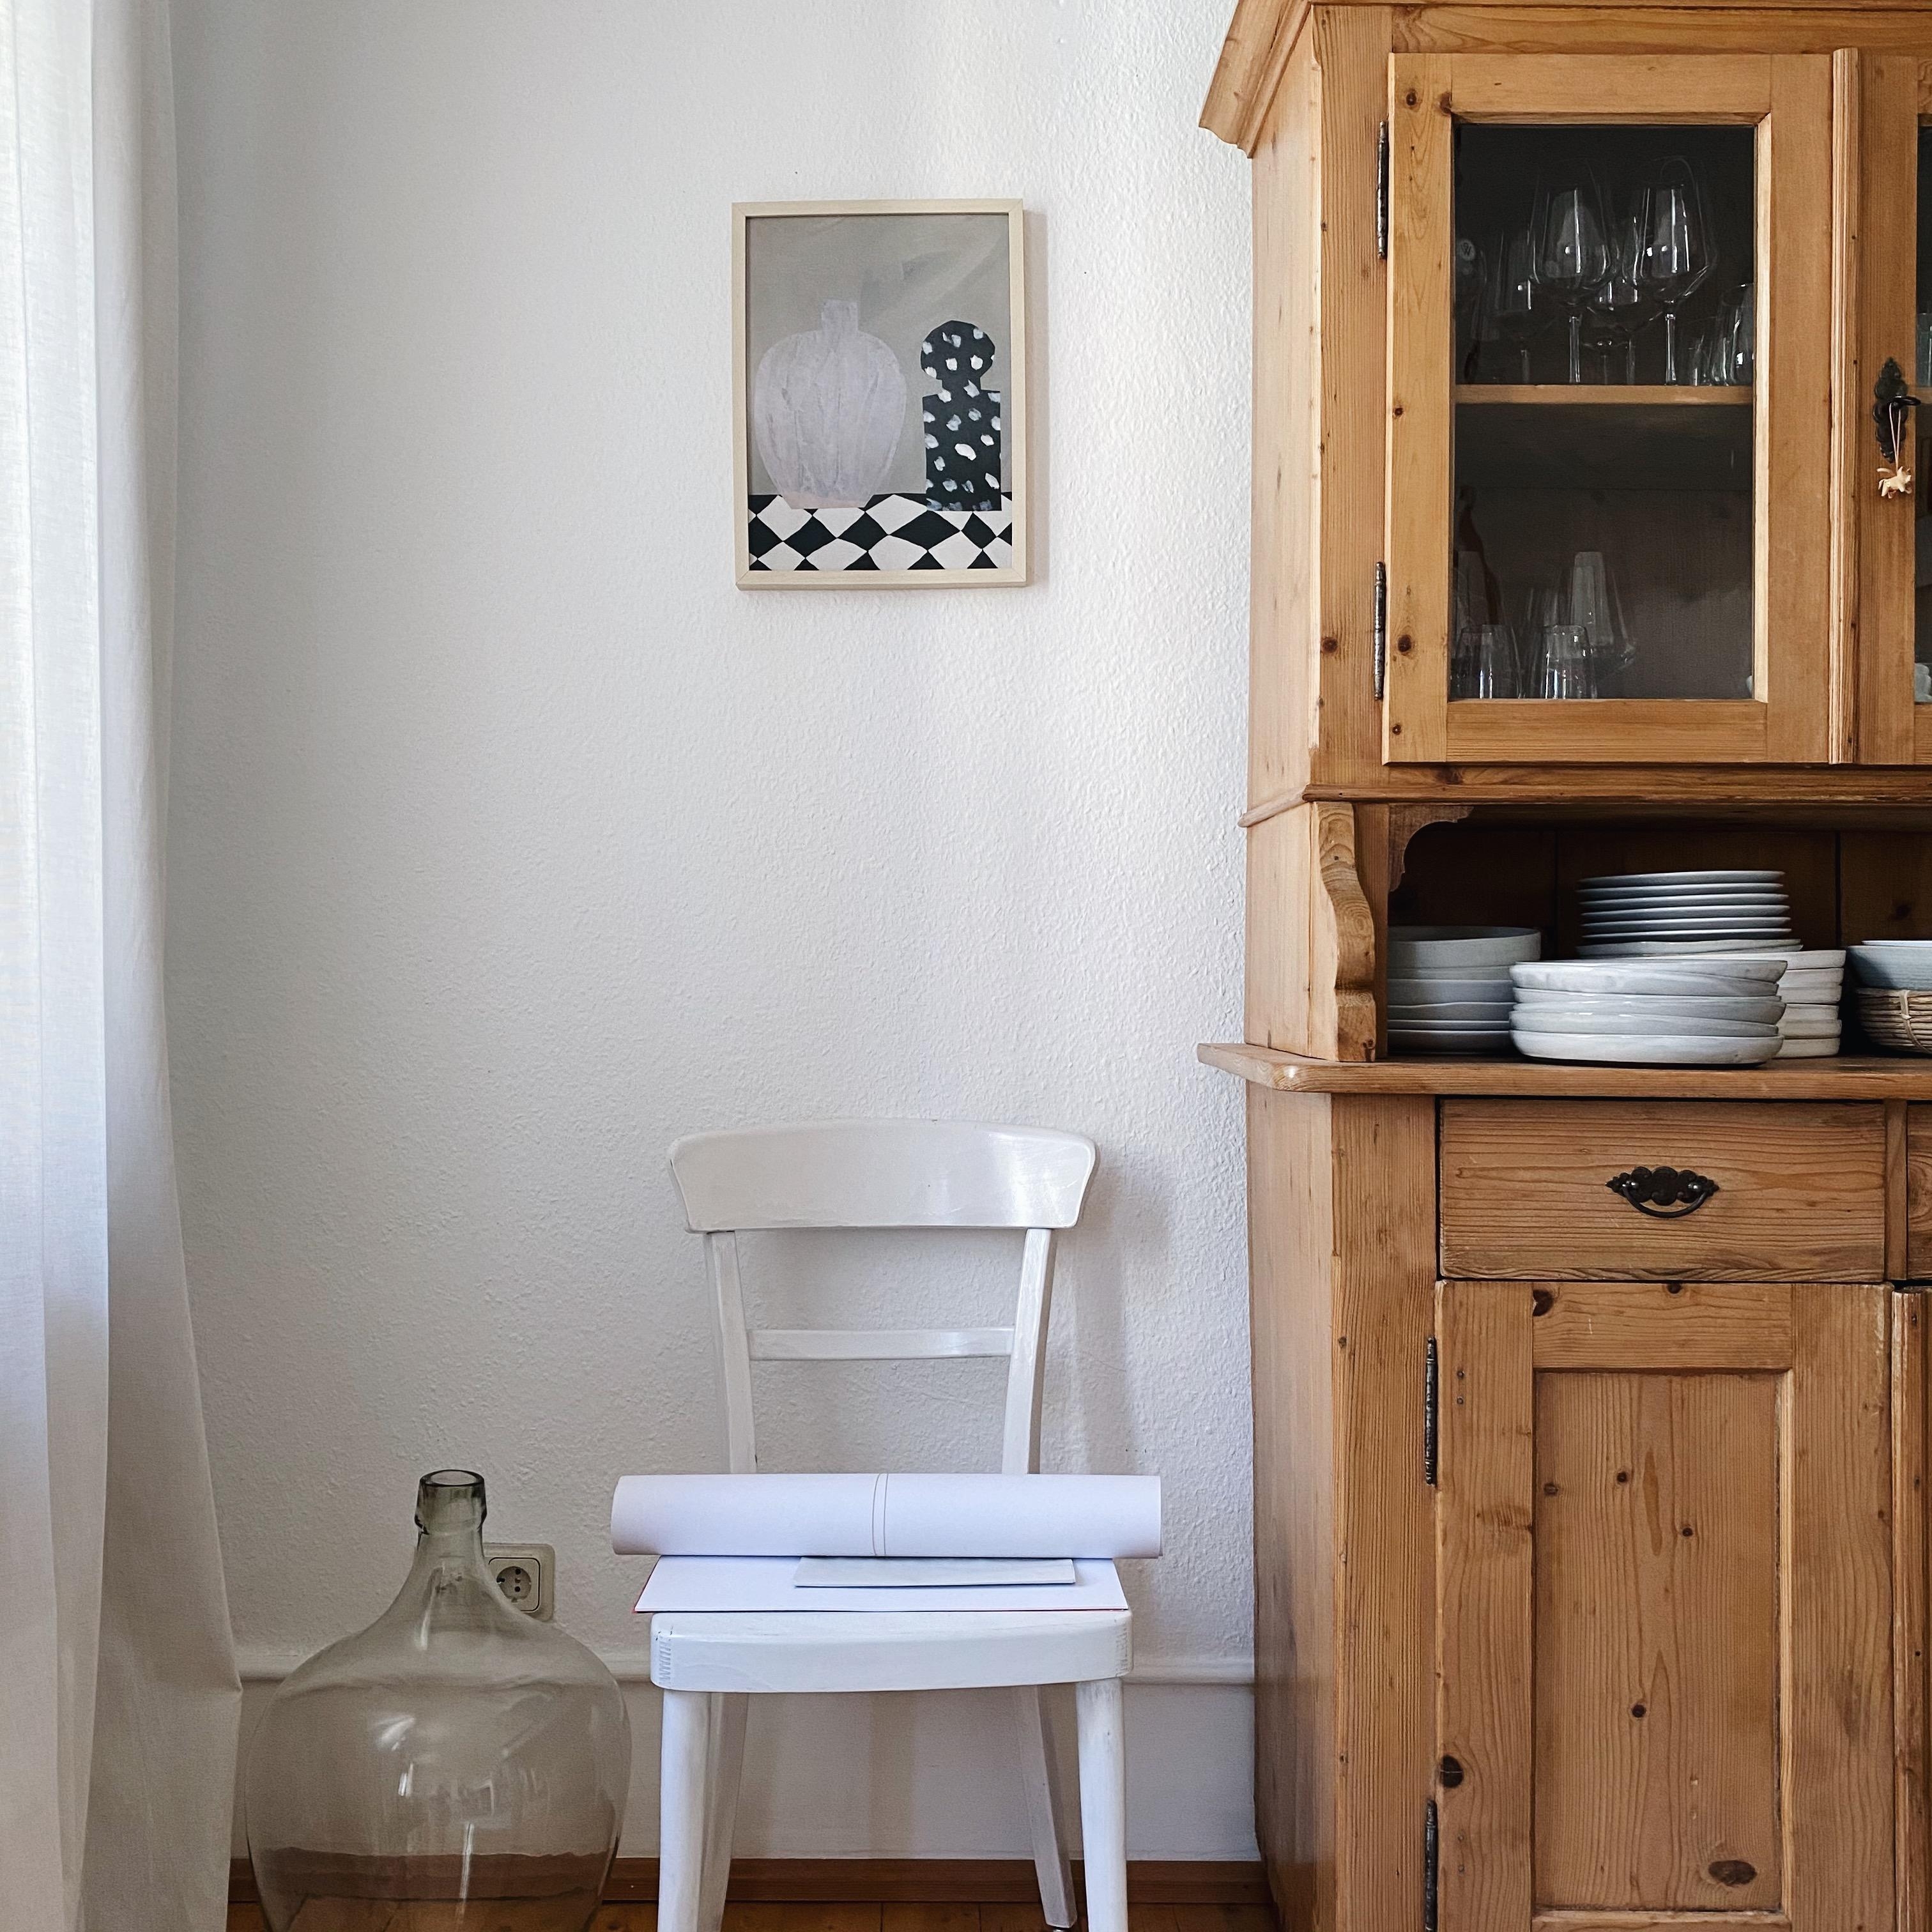 Vintage-Schrank-Liebe. #vitrine #bauernschrank #vintage #secondhand #esszimmer #diningroom